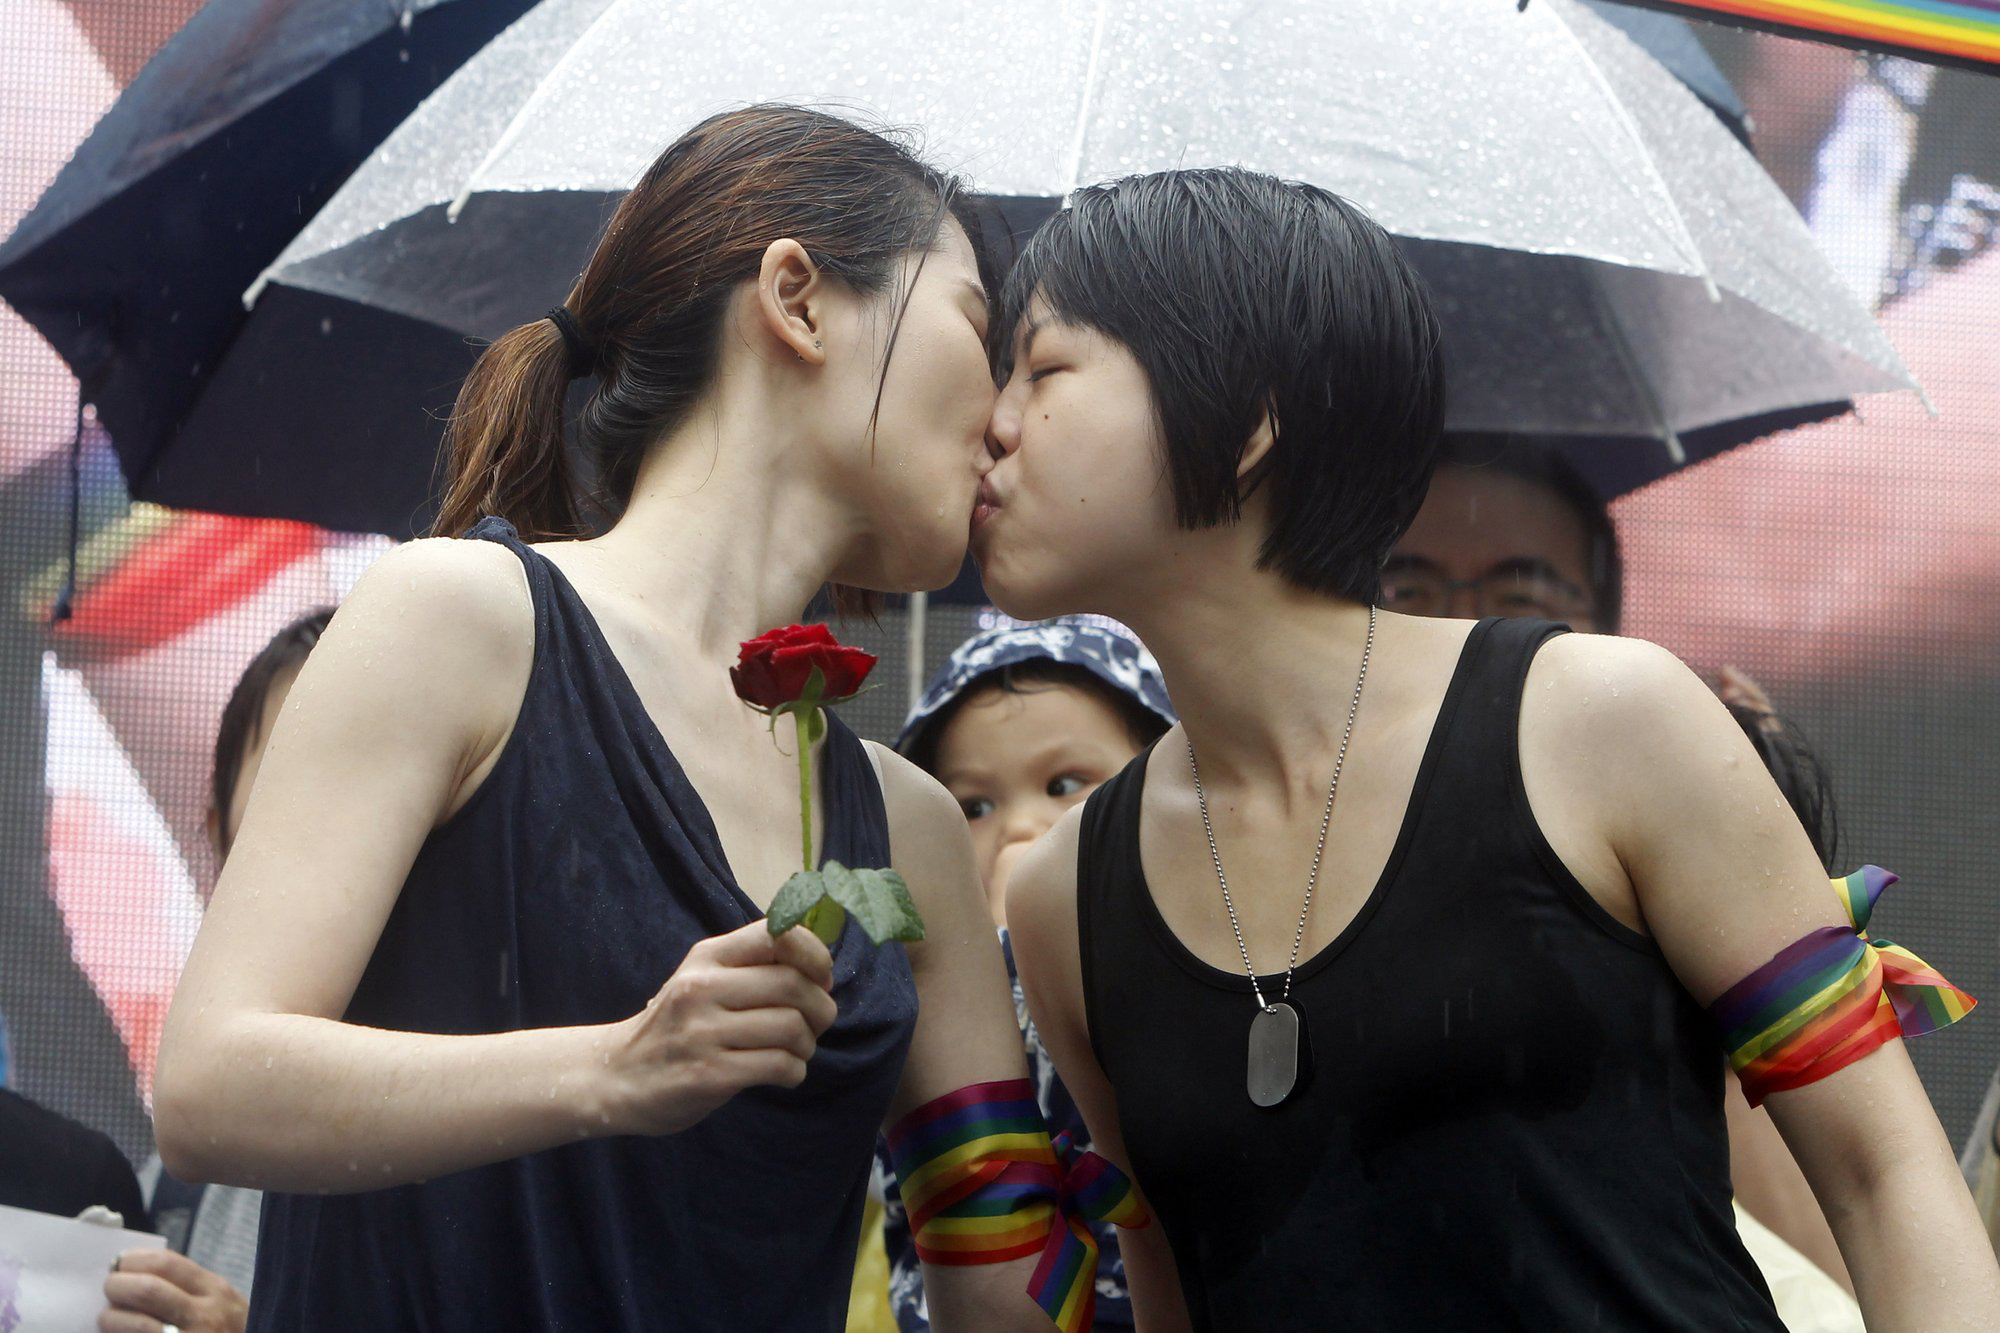 30 quốc gia trên thế giới công nhận hôn nhân đồng giới hợp pháp - Ảnh 1.